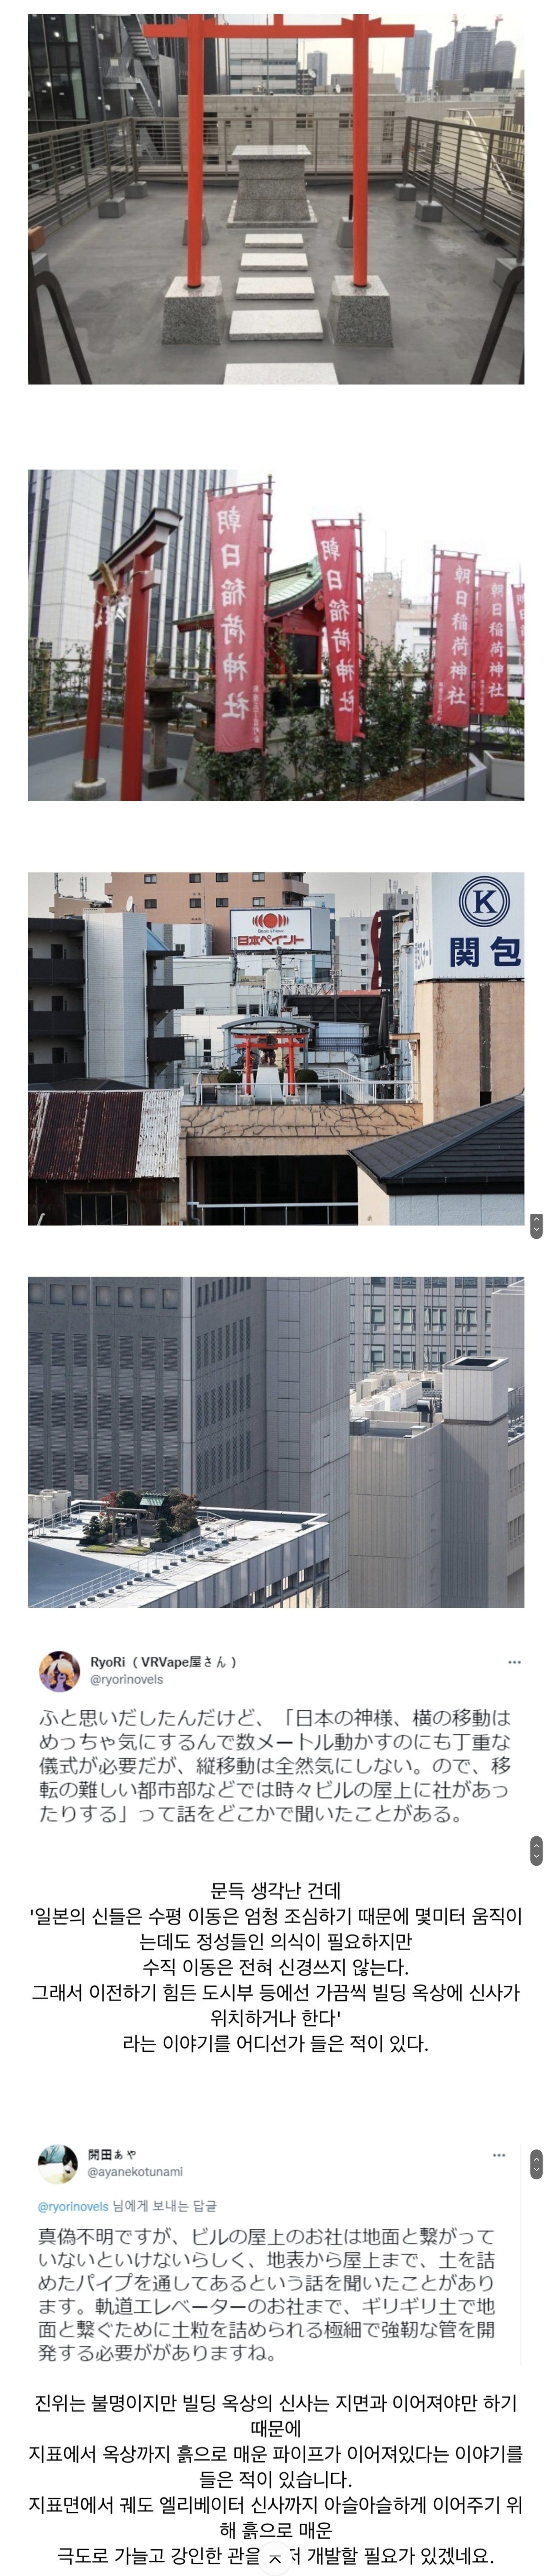 일본과 한국의 빌딩 옥상 비교